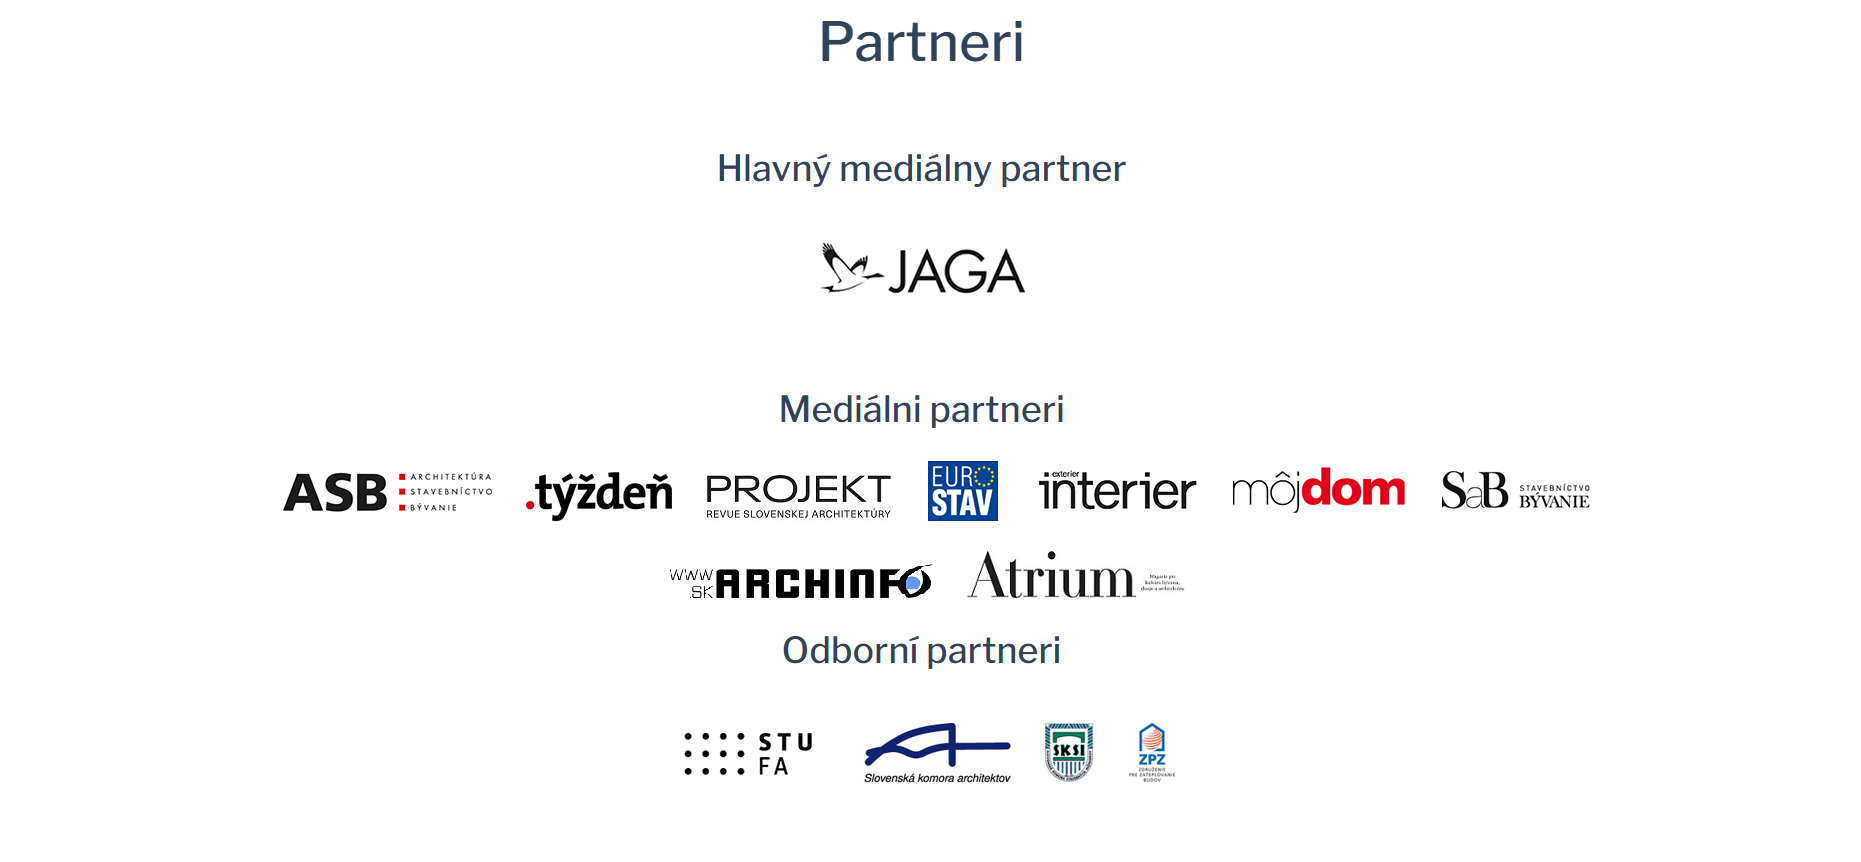 Partneri súťaže